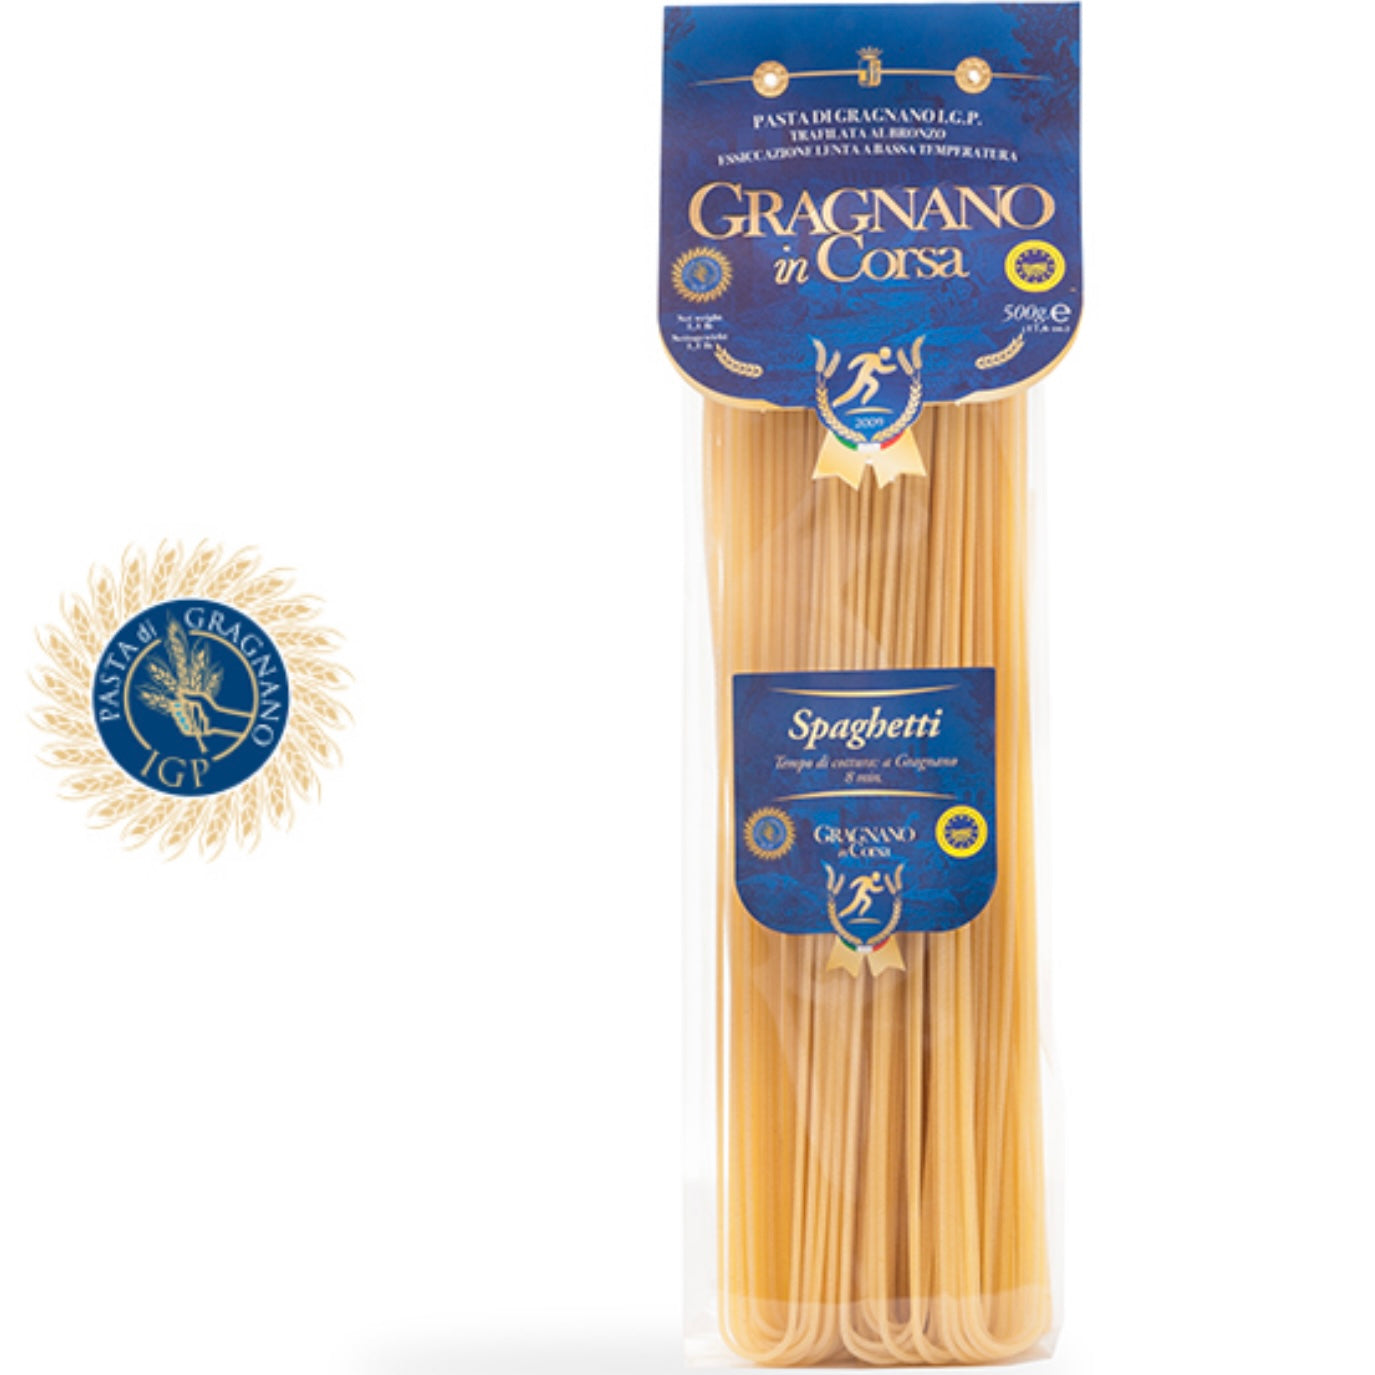 Gragnano in Corsa IGP Spaghetti Pasta GRN-001